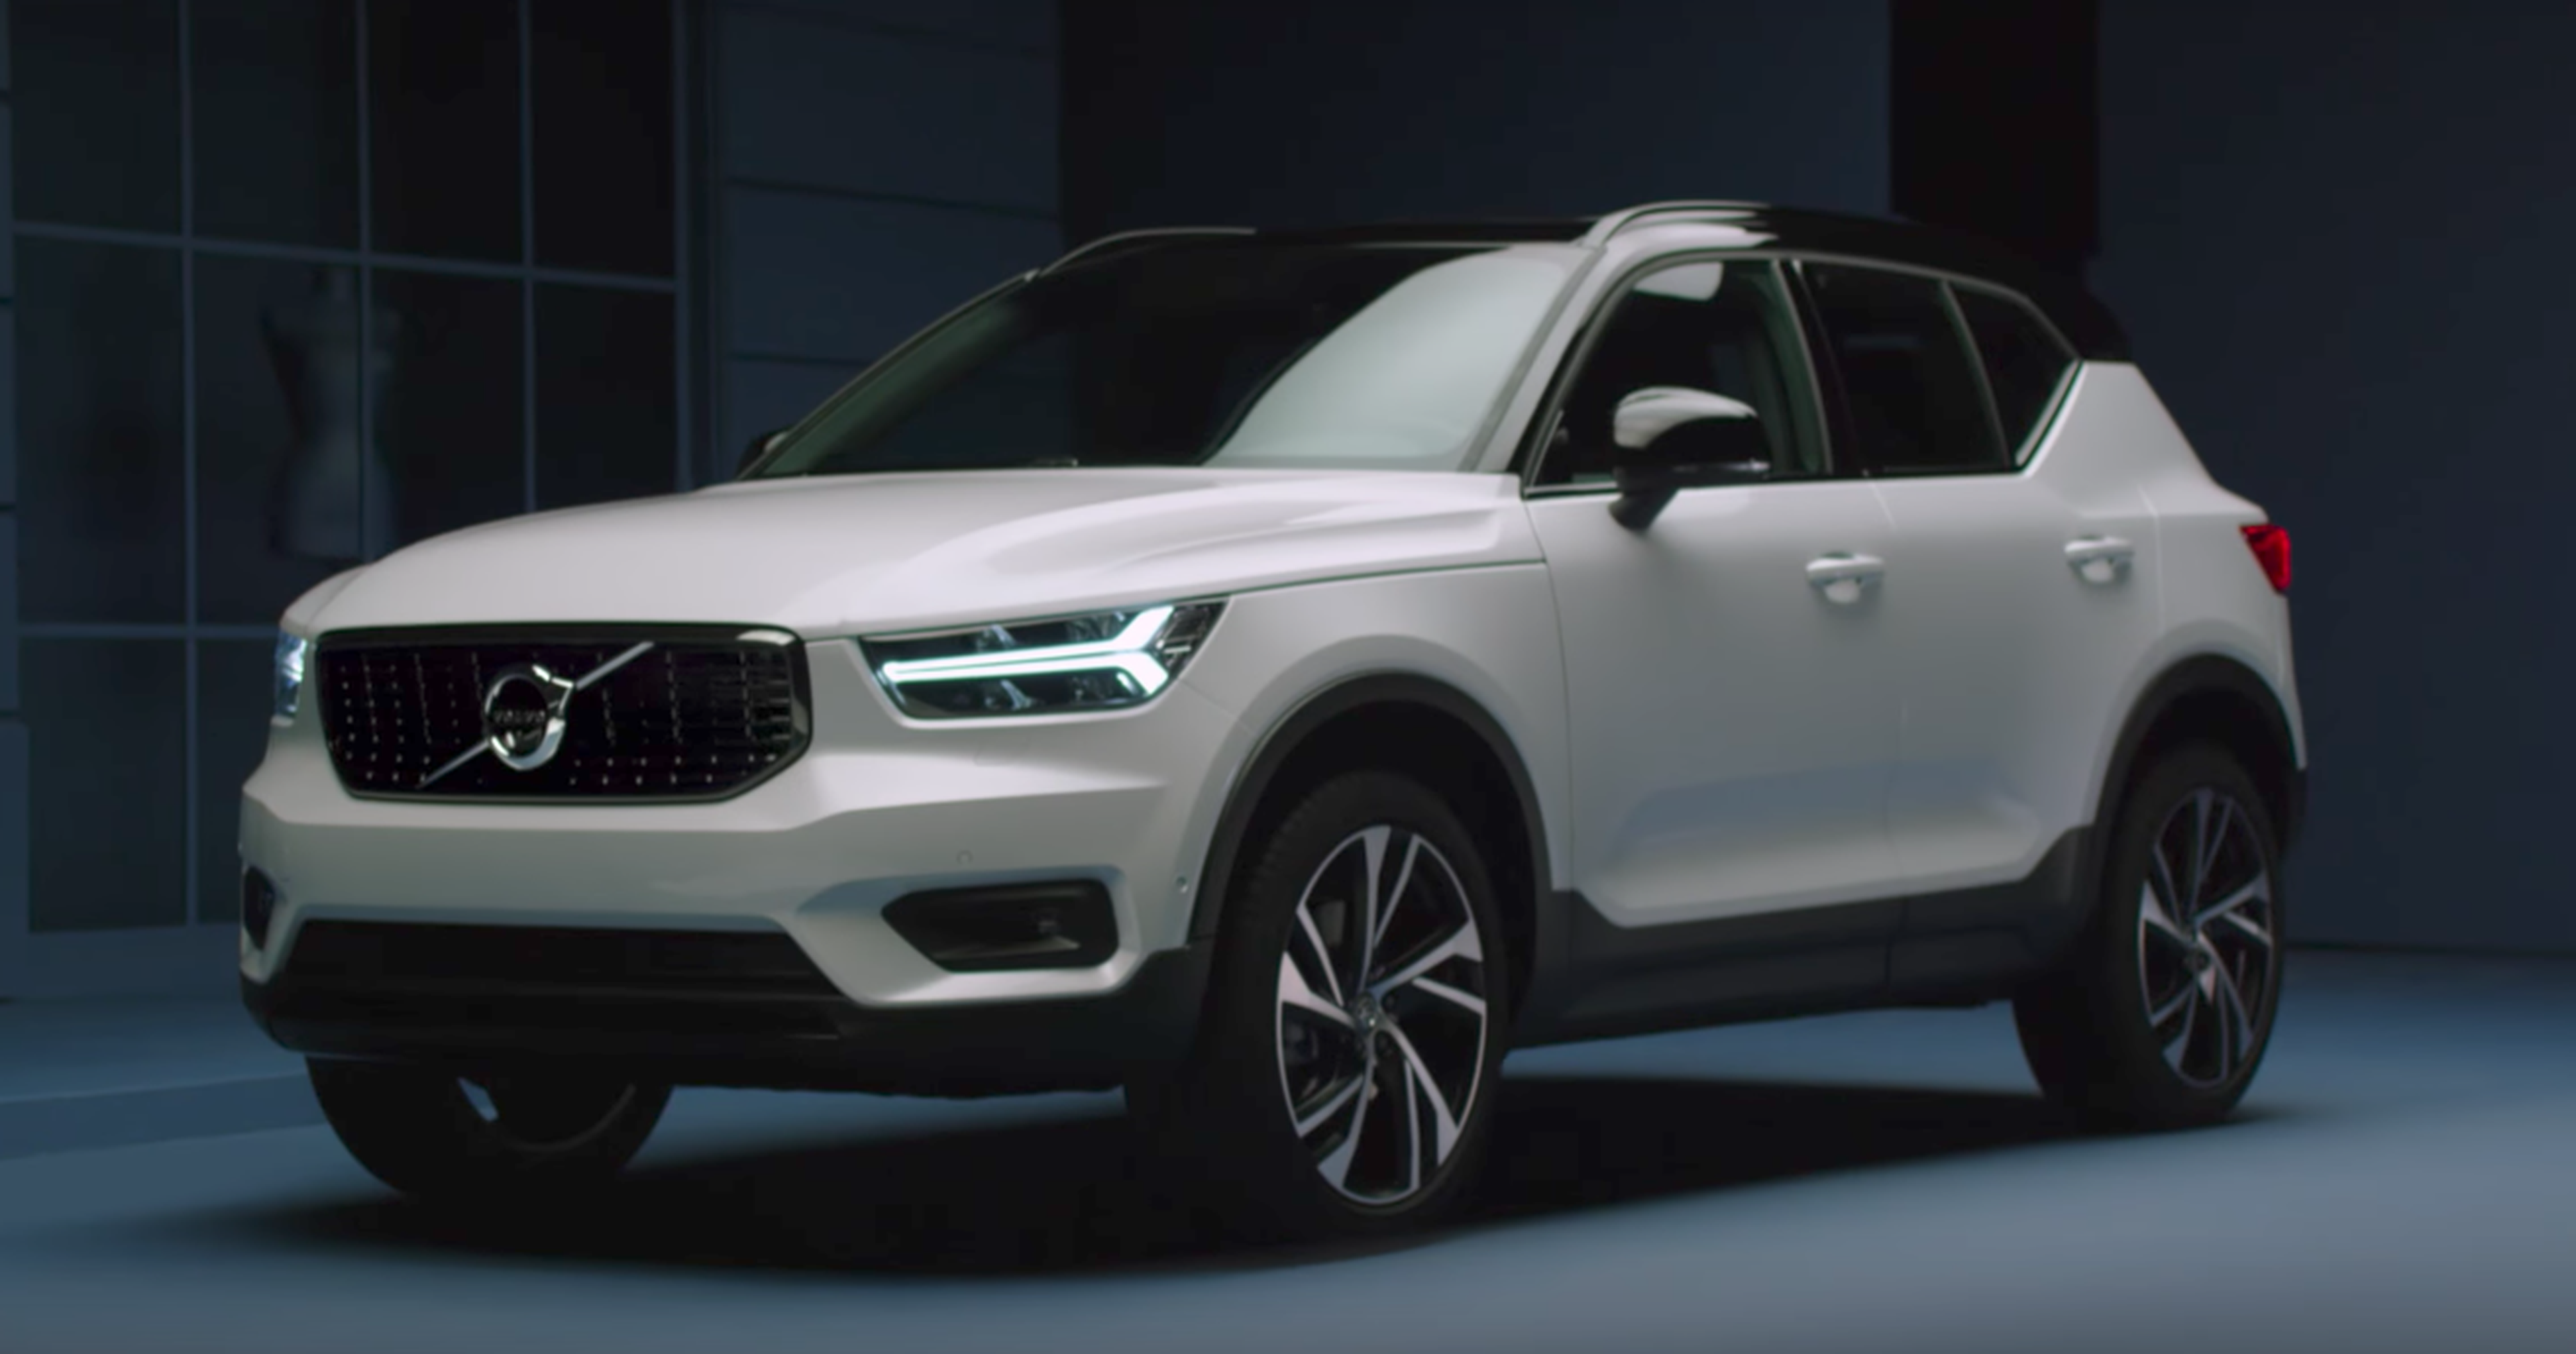 VÍDEO: Contempla el exterior del Volvo XC40 al detalle